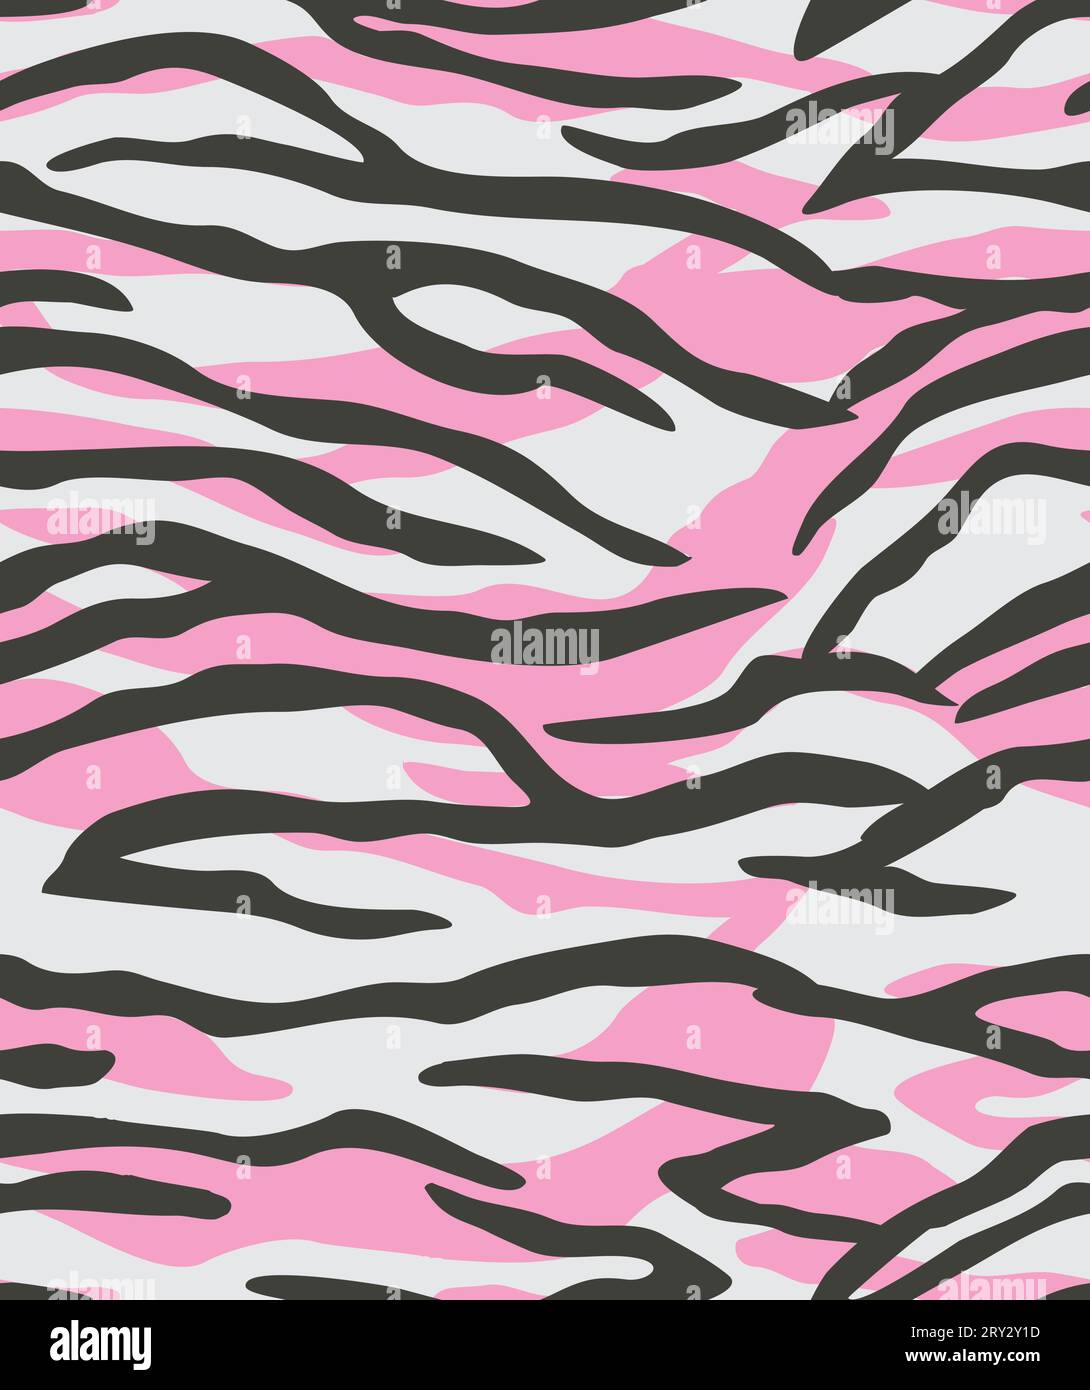 Tigerhautstruktur. Nahtloses Muster. Rosa, weiß und schwarz. Stock Vektor